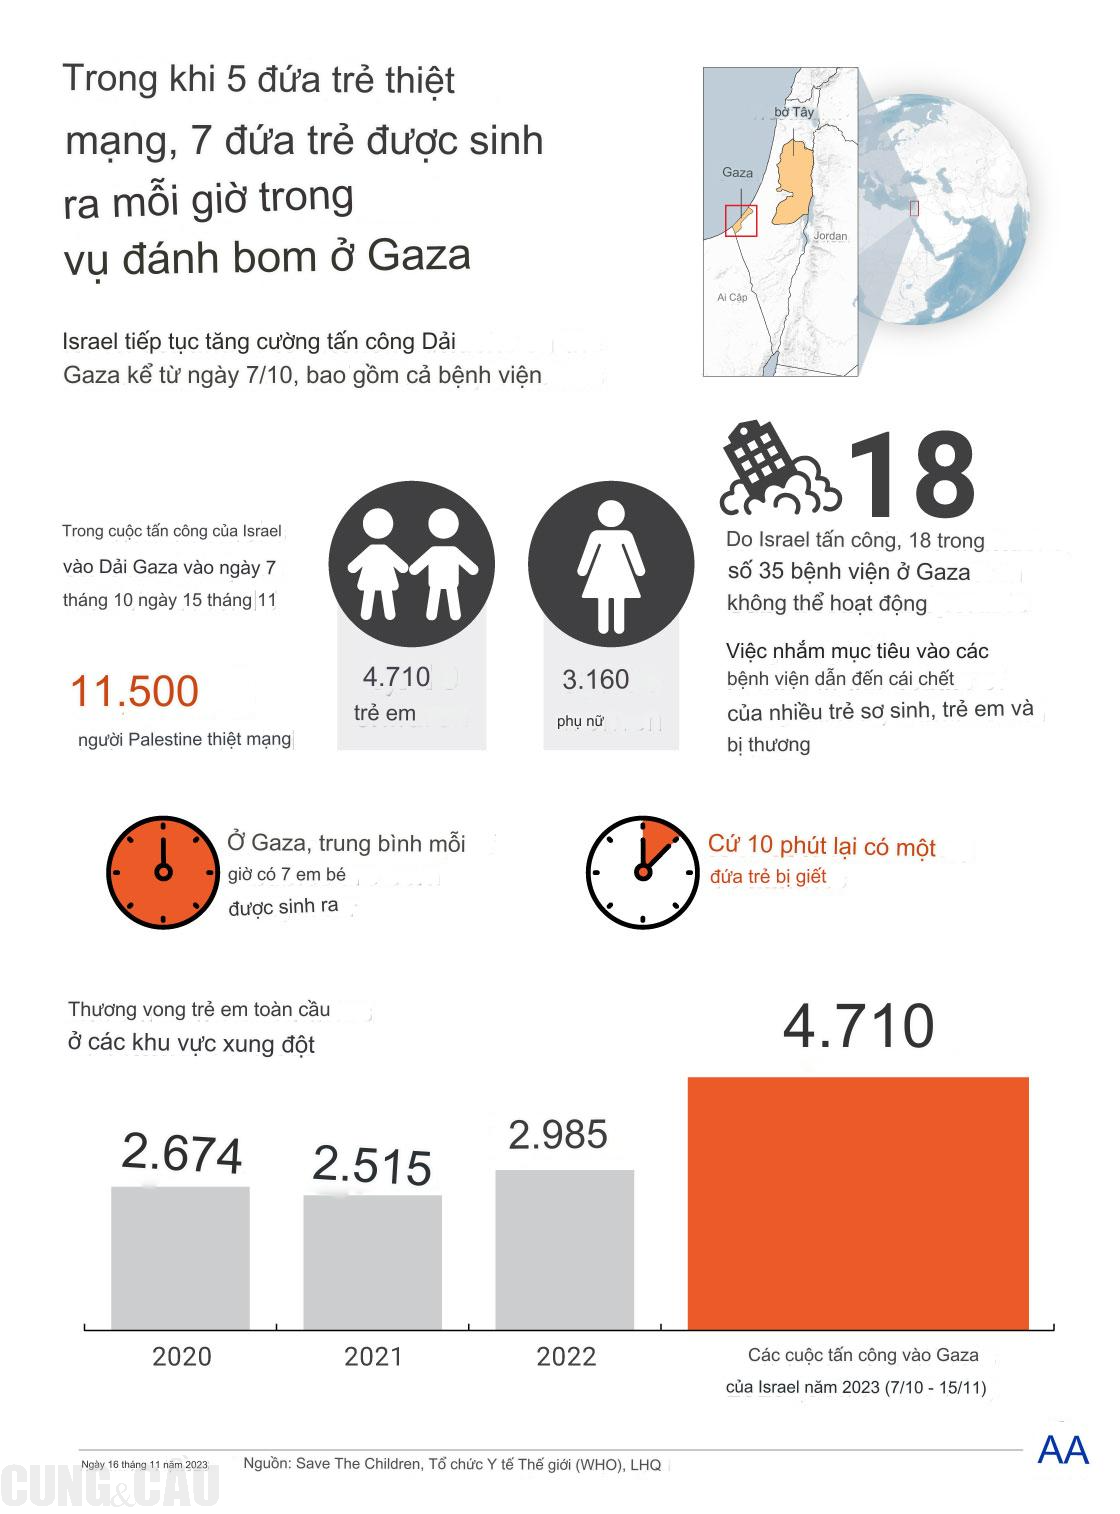 Mỗi giờ Gaza có 7 em bé chào đời thì 5 trẻ em chết vì bom đạn của Israel- Ảnh 1.